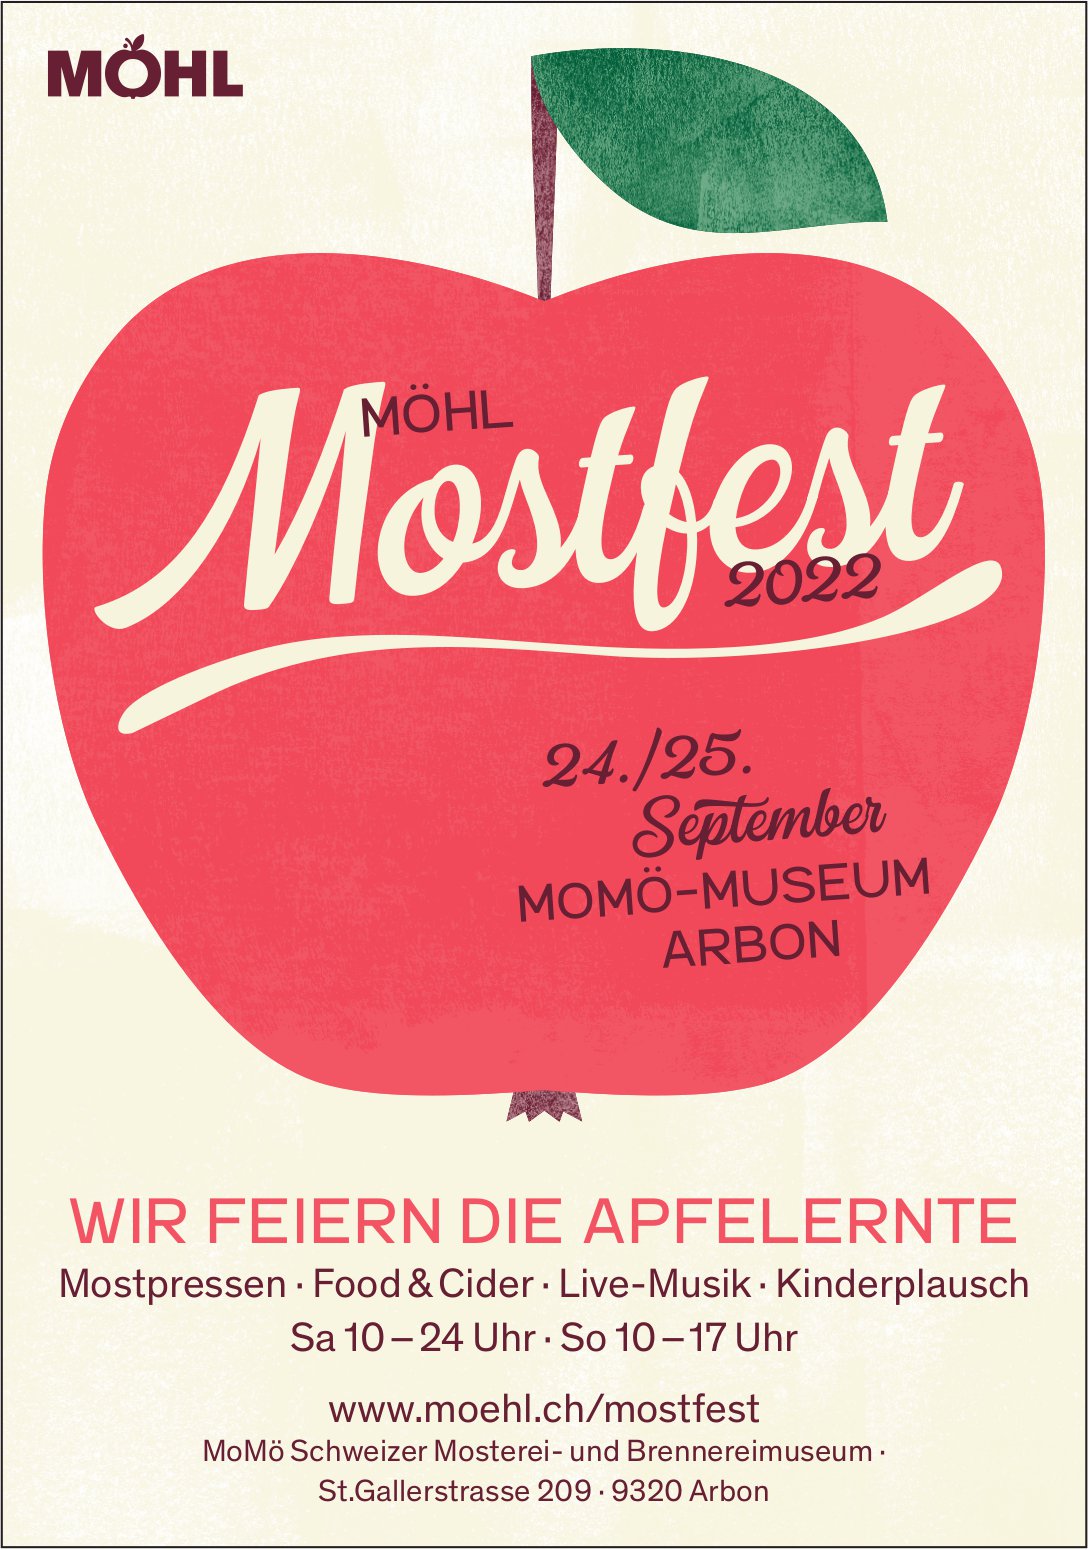 Möhl Mostfest, 24. /25. September, MoMö Schweizer Mosterei- und Brennereimuseum , Arbon